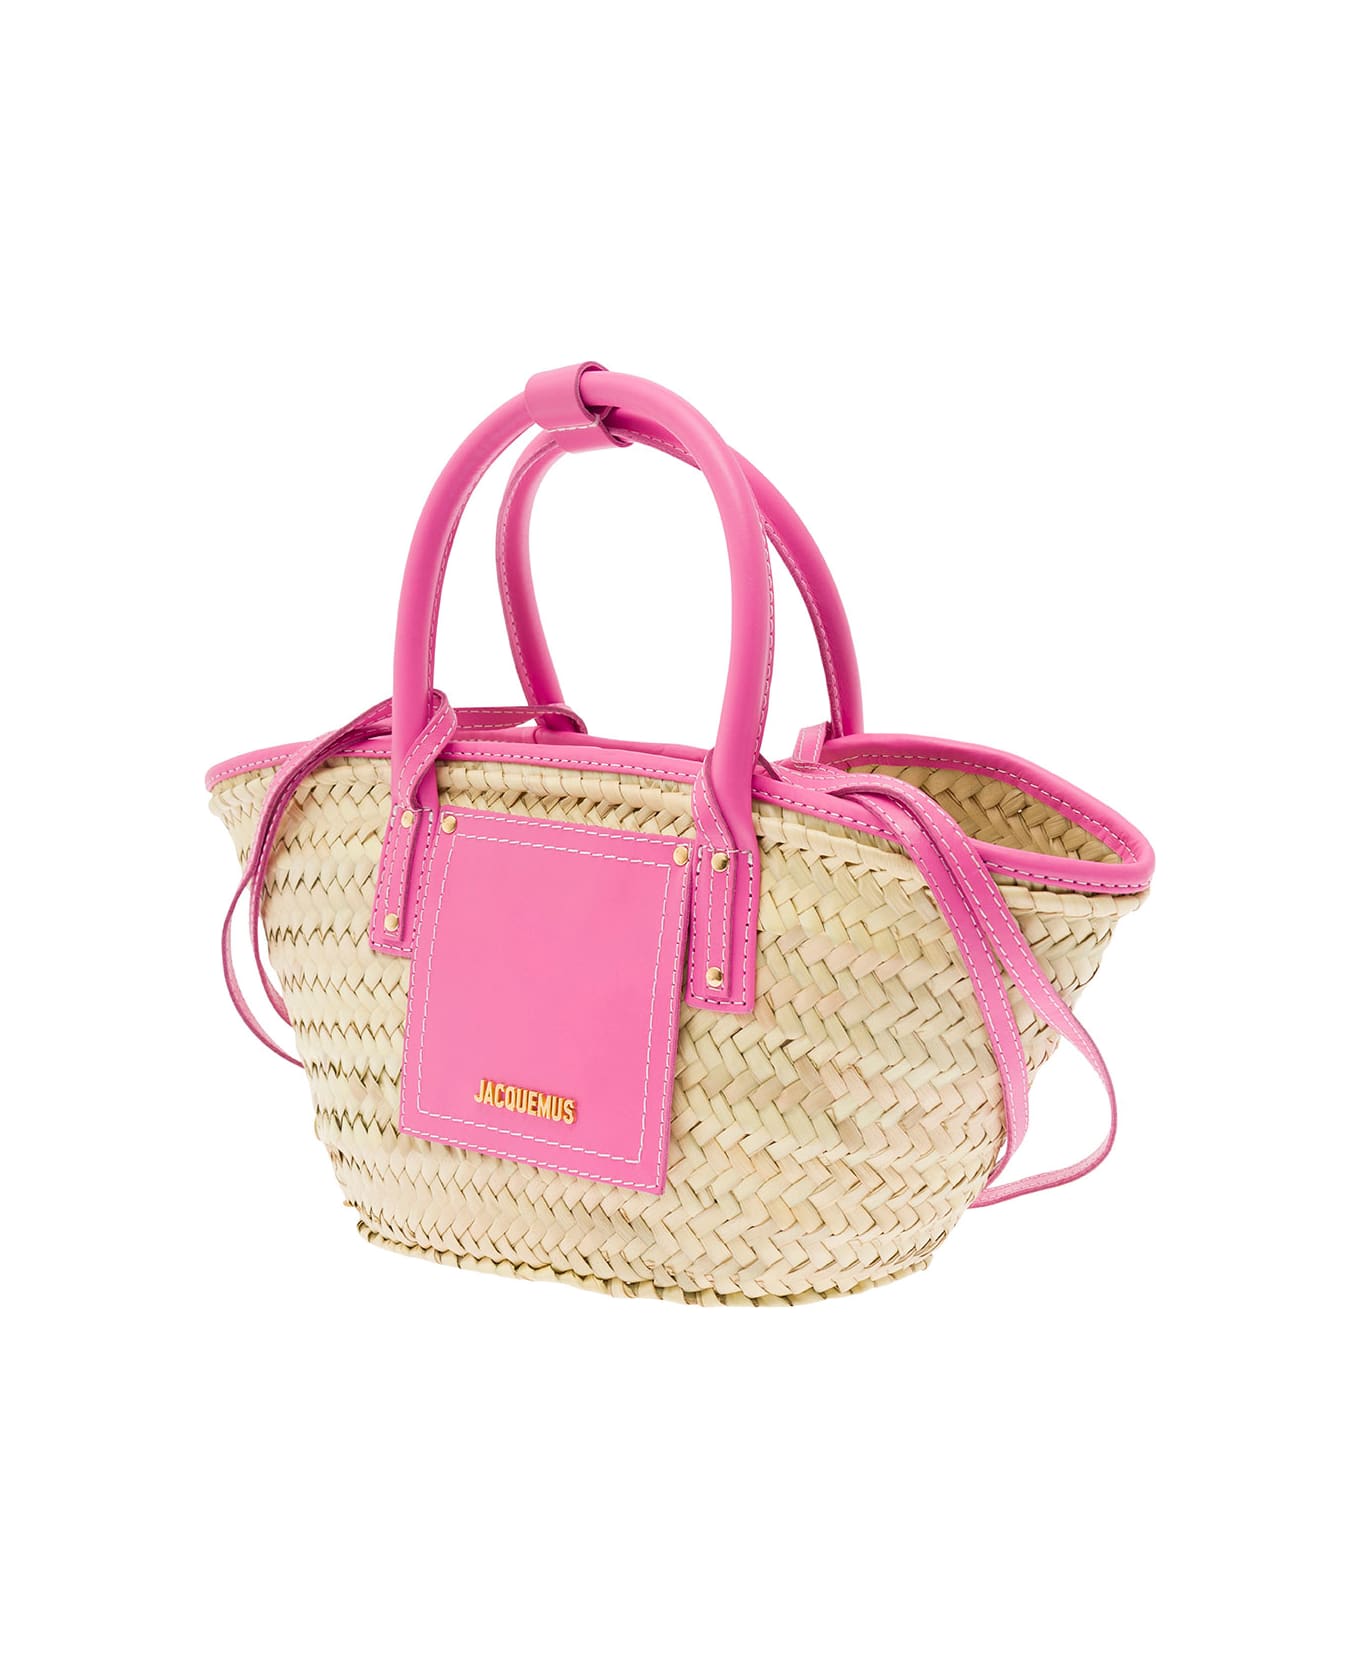 Jacquemus Le Petit Panier Soli Bag - Neon pink